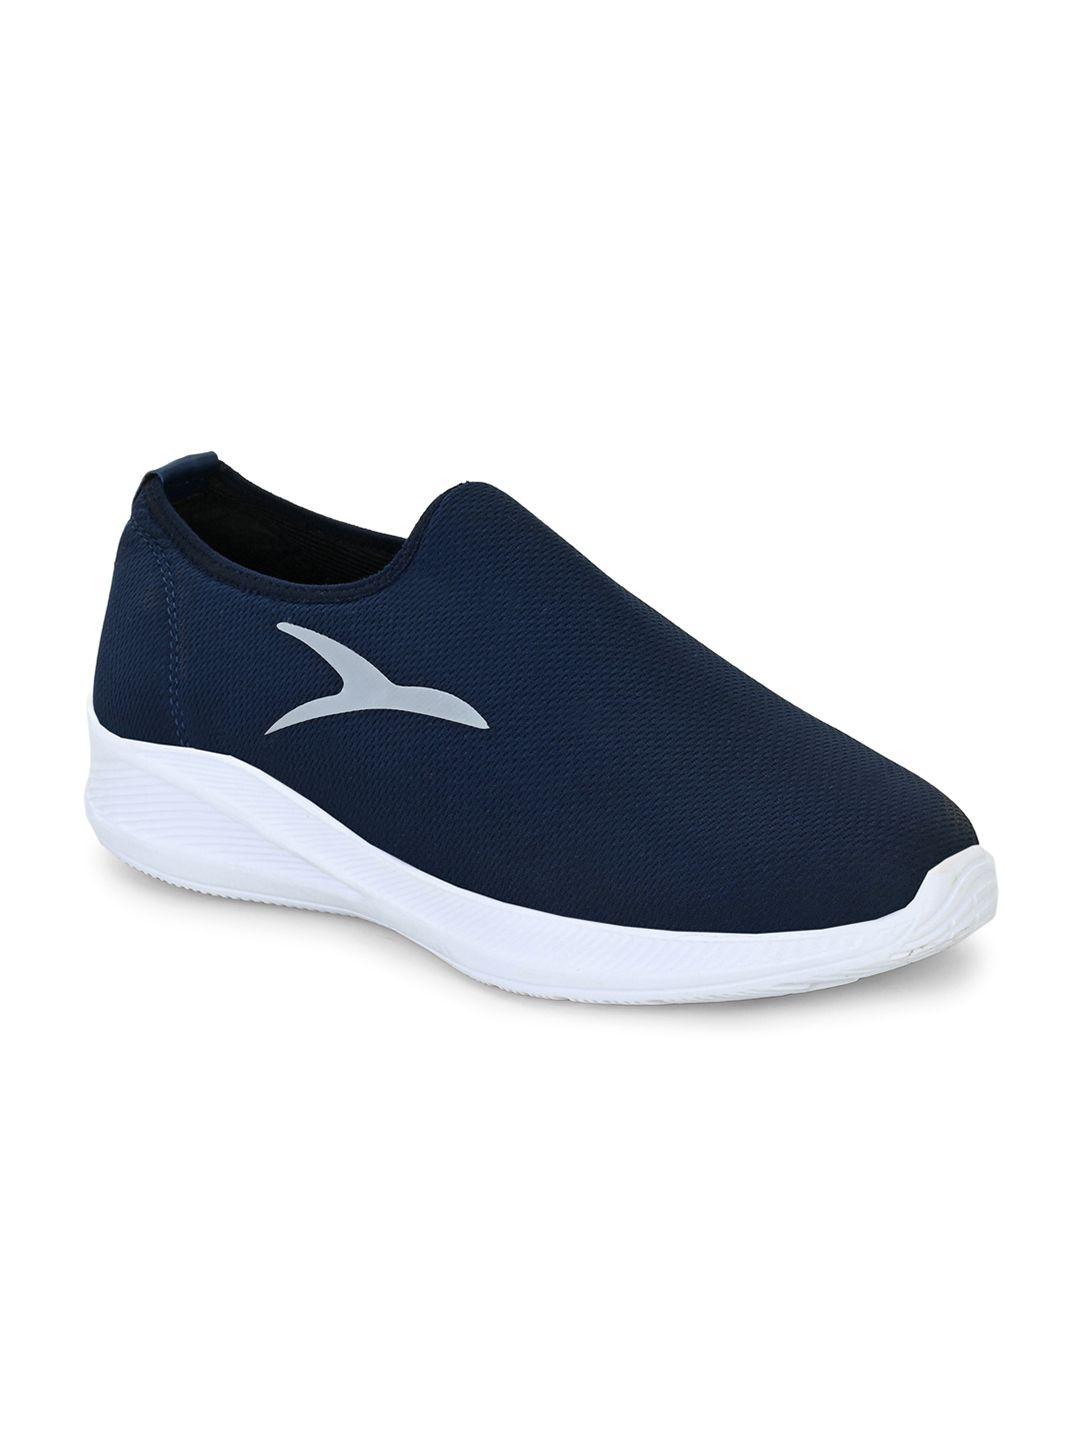 hirolas-men-navy-blue-running-shoes